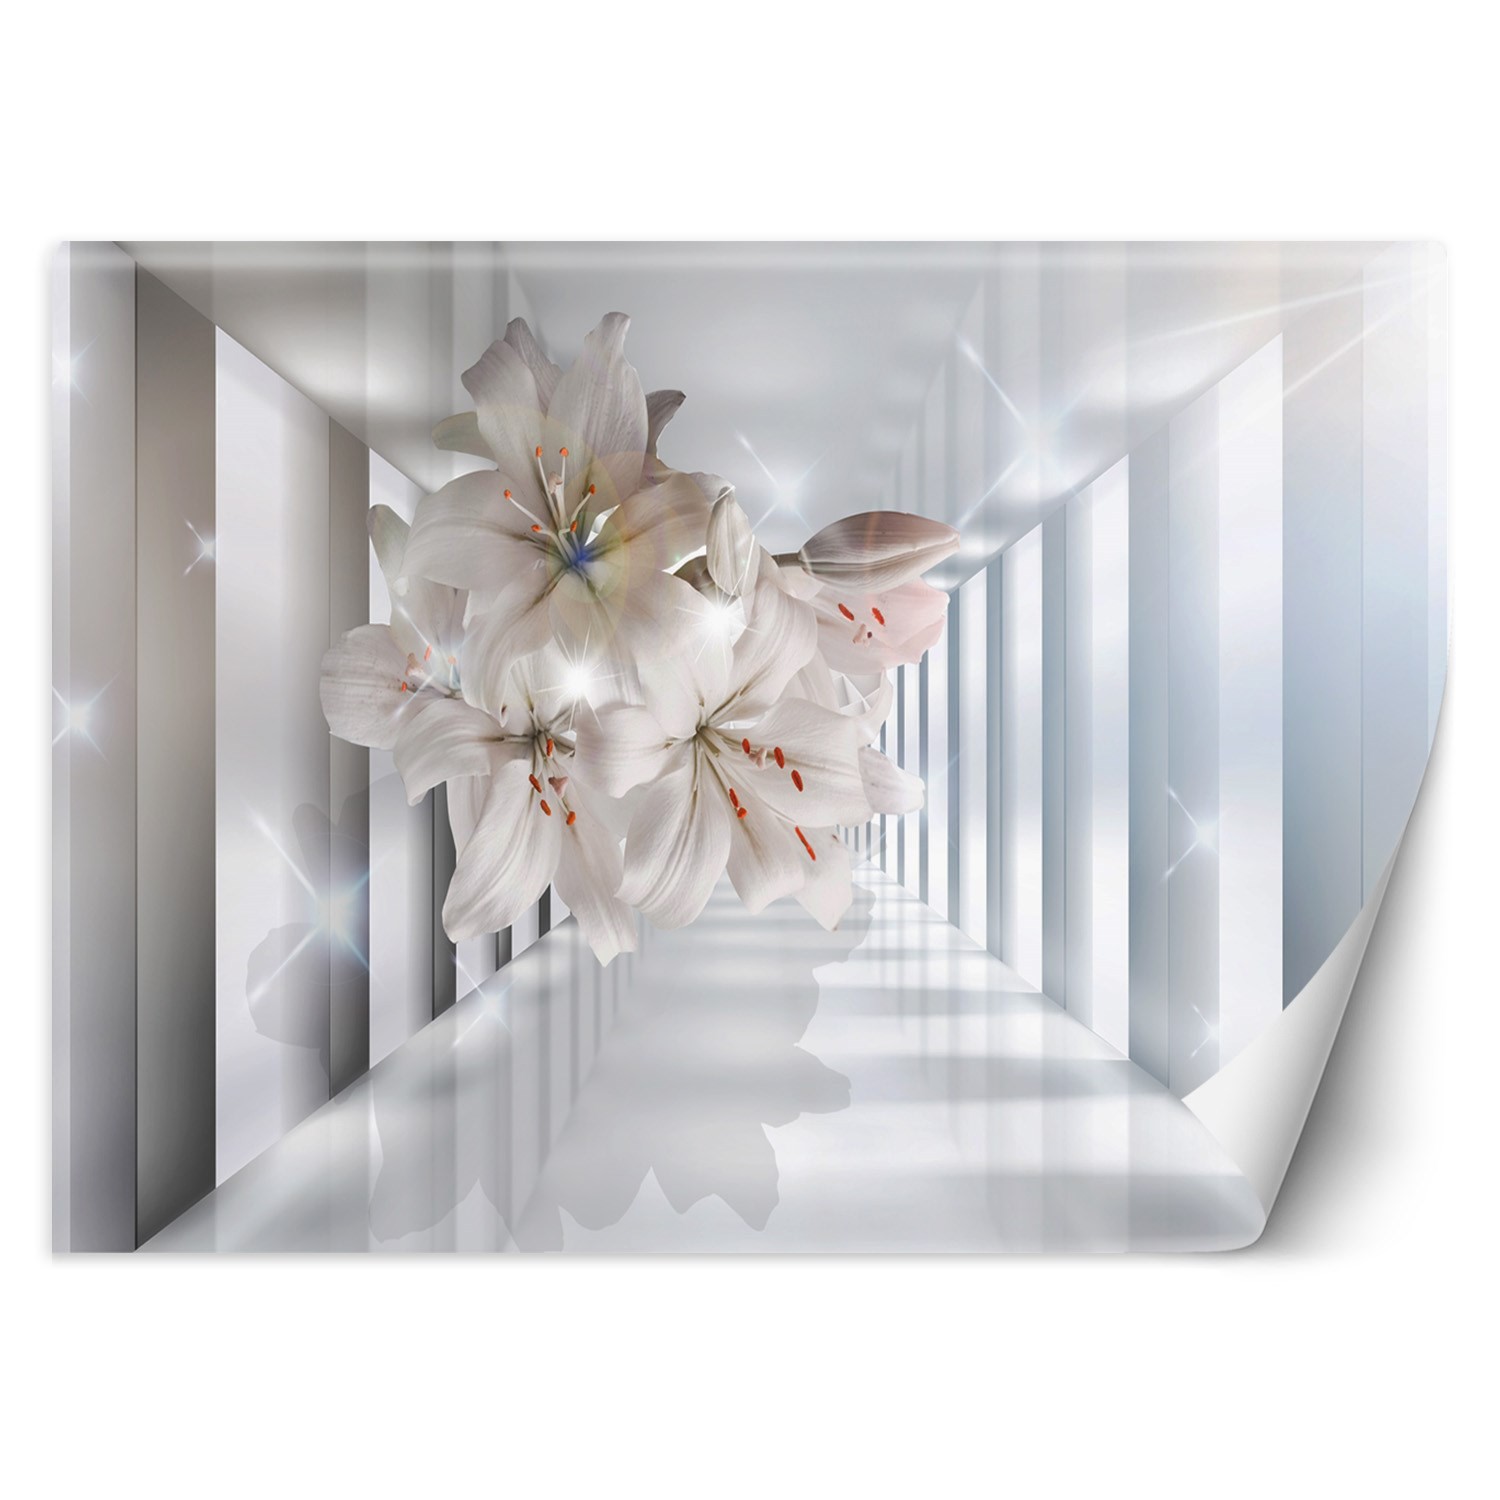 Trend24 – Behang – Bloemen In De Corridor 3D – Vliesbehang – Fotobehang 3D – Behang Woonkamer – 400×280 cm – Incl. behanglijm